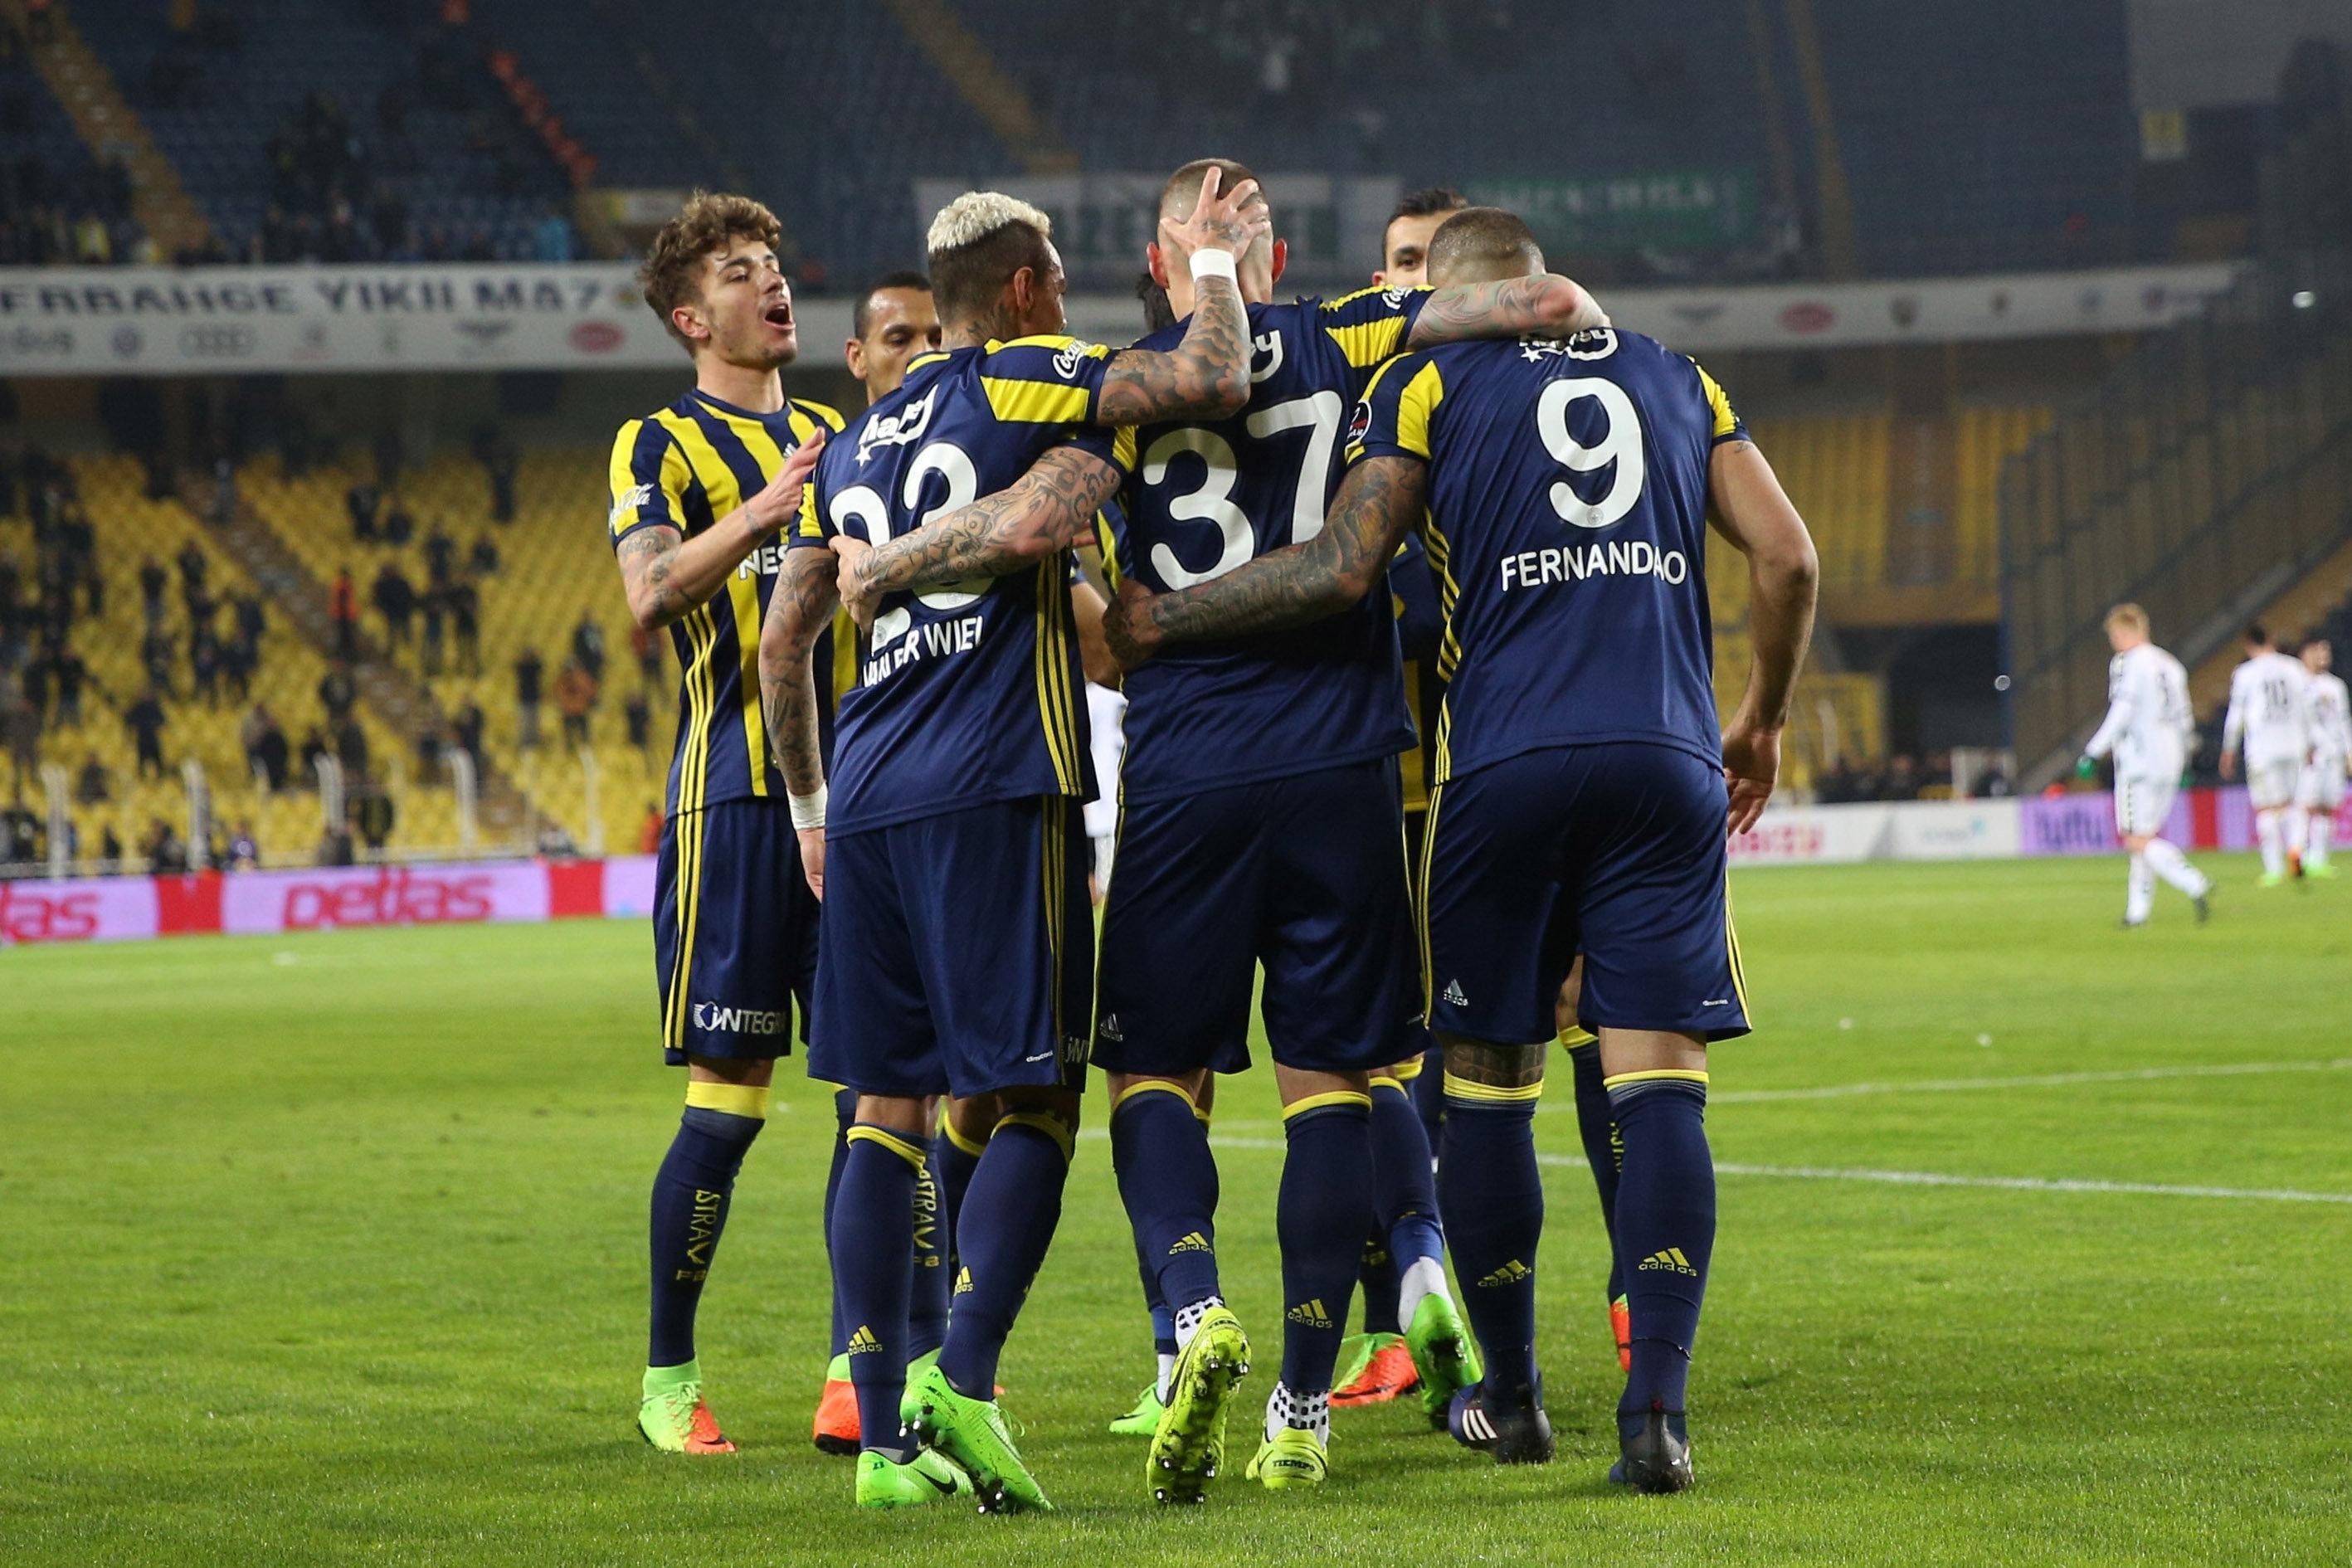 Fenerbahçe 2 - 3 Atiker Konyaspor